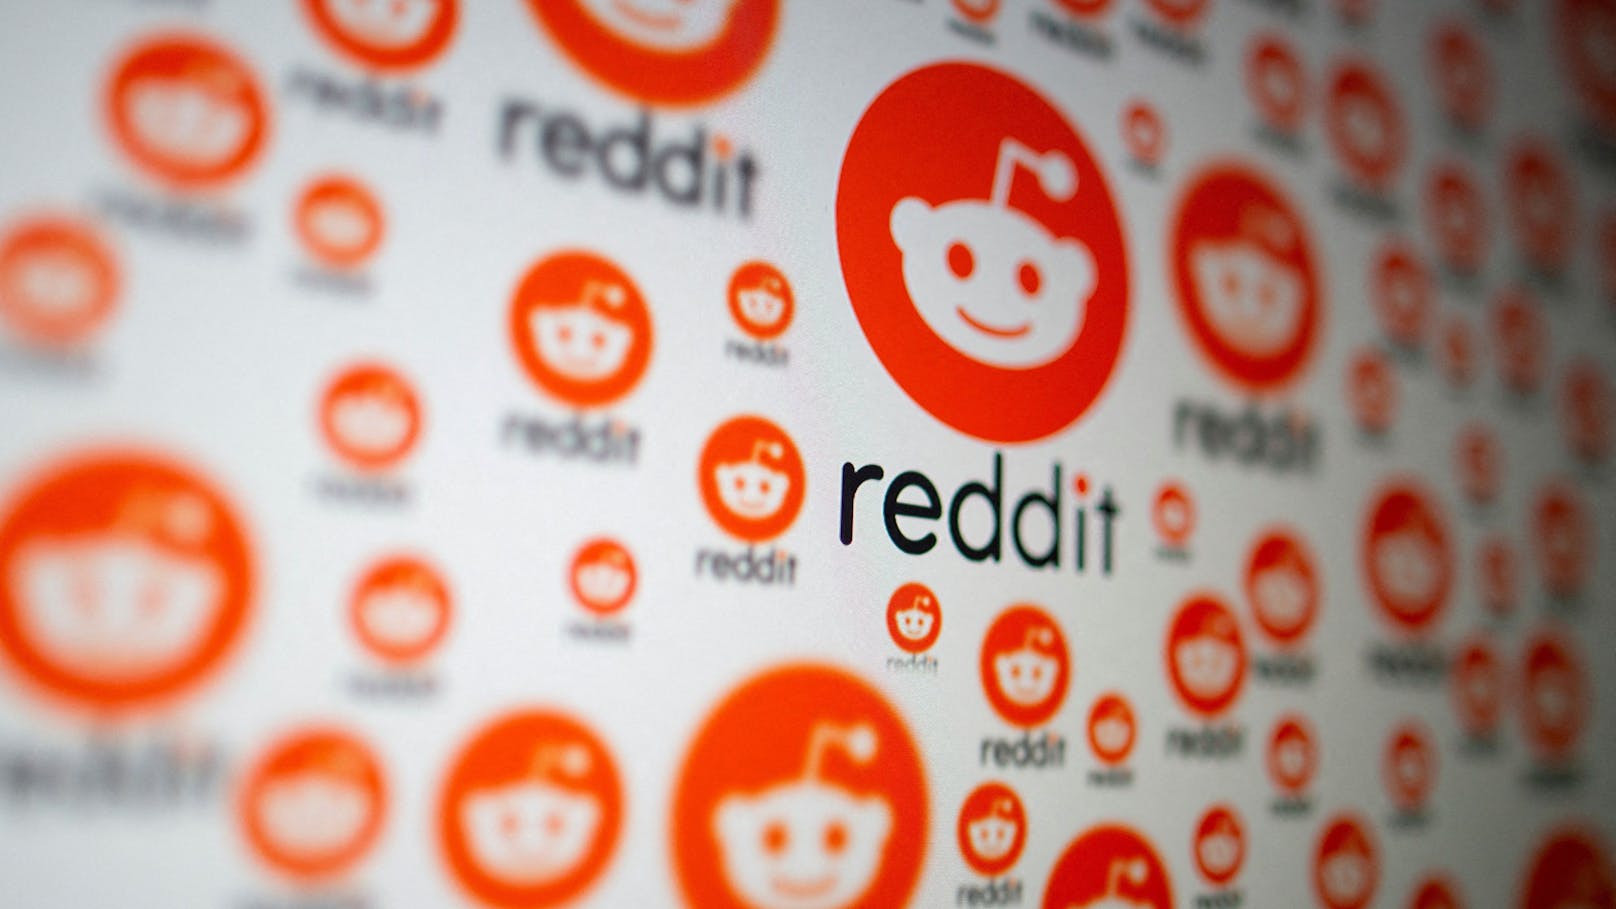 Reddit ist das größte Internetforum der Welt, im vergangenen Quartal hatte es im Schnitt täglich 73,1 Millionen Nutzerinnen und Nutzer. 